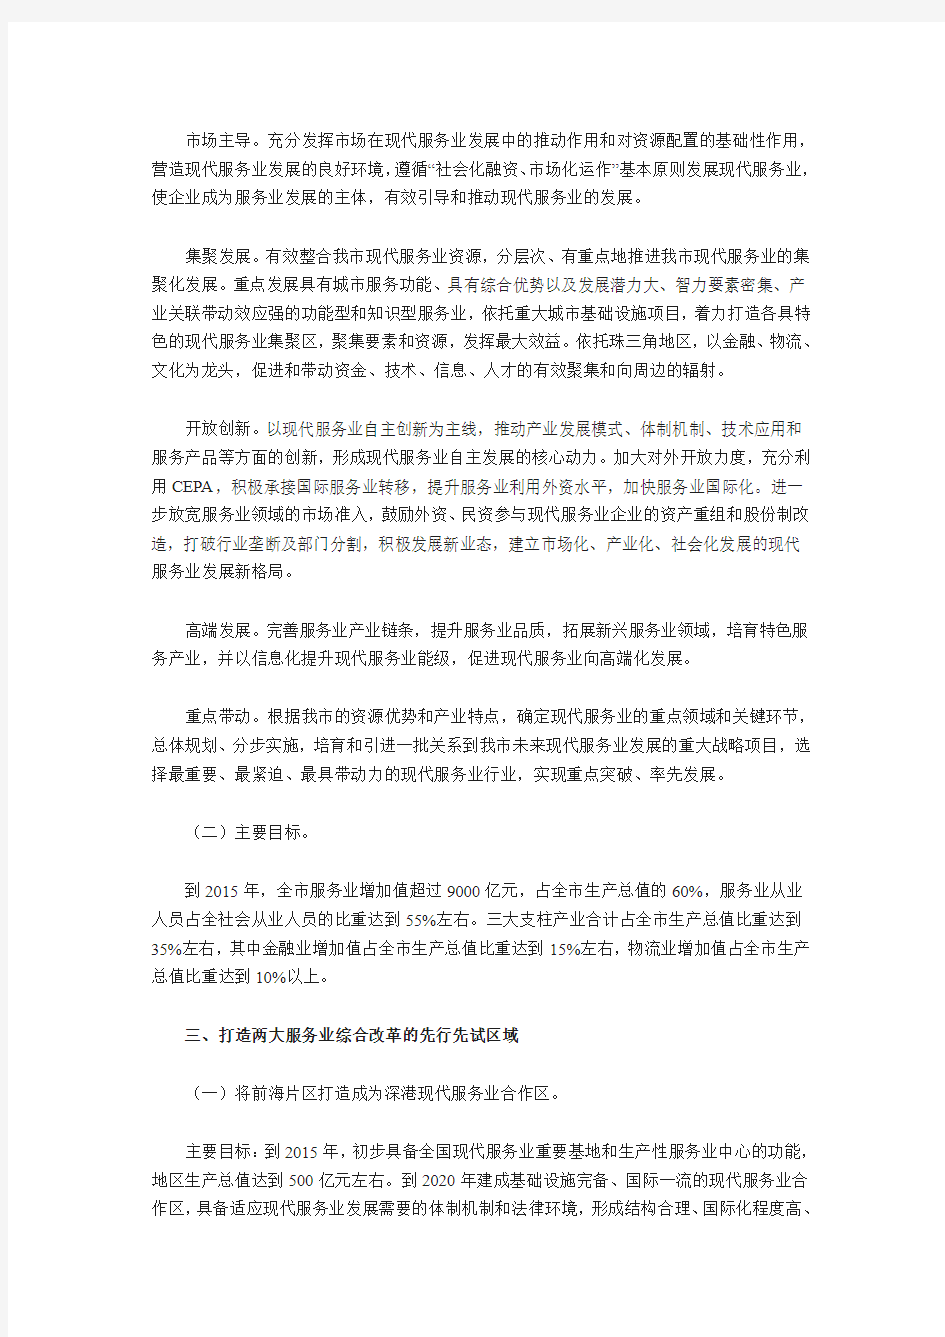 深圳市人民政府办公厅关于印发深圳市开展国家服务业综合改革试点实施方案(2011-2015年)的通知